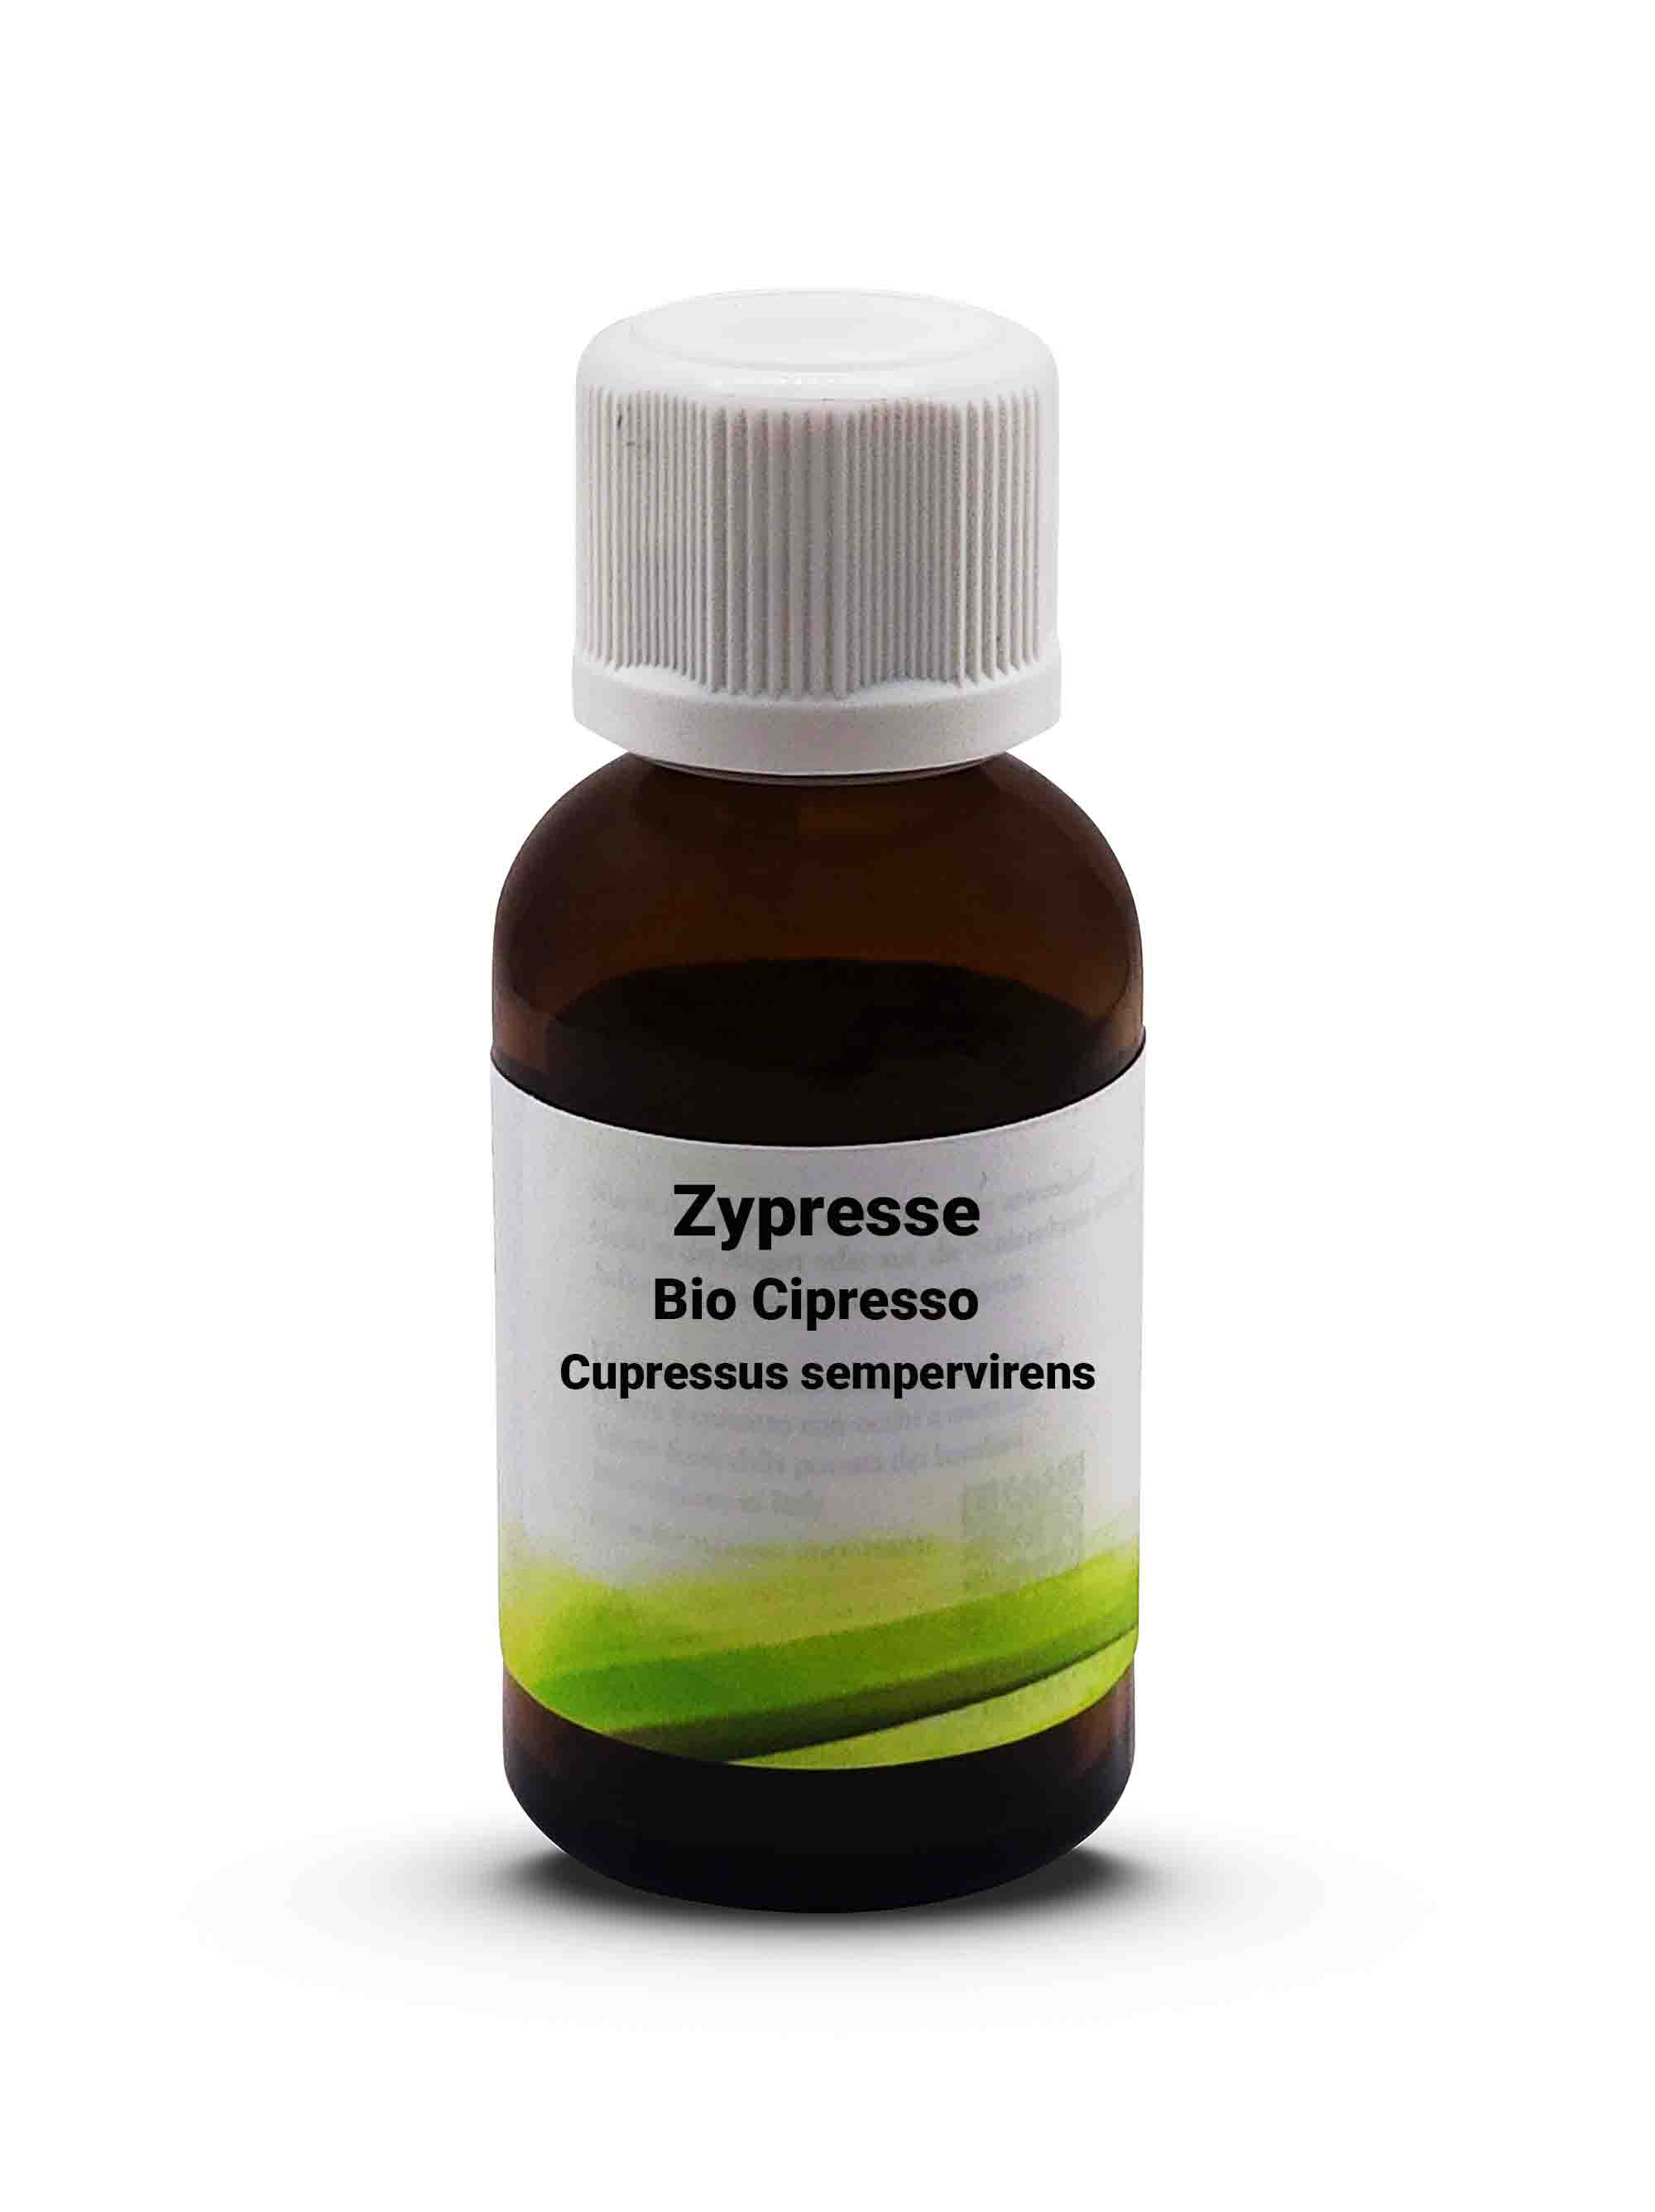 Zypresse  Cipresso - Cupressus sempervirens 10 ml